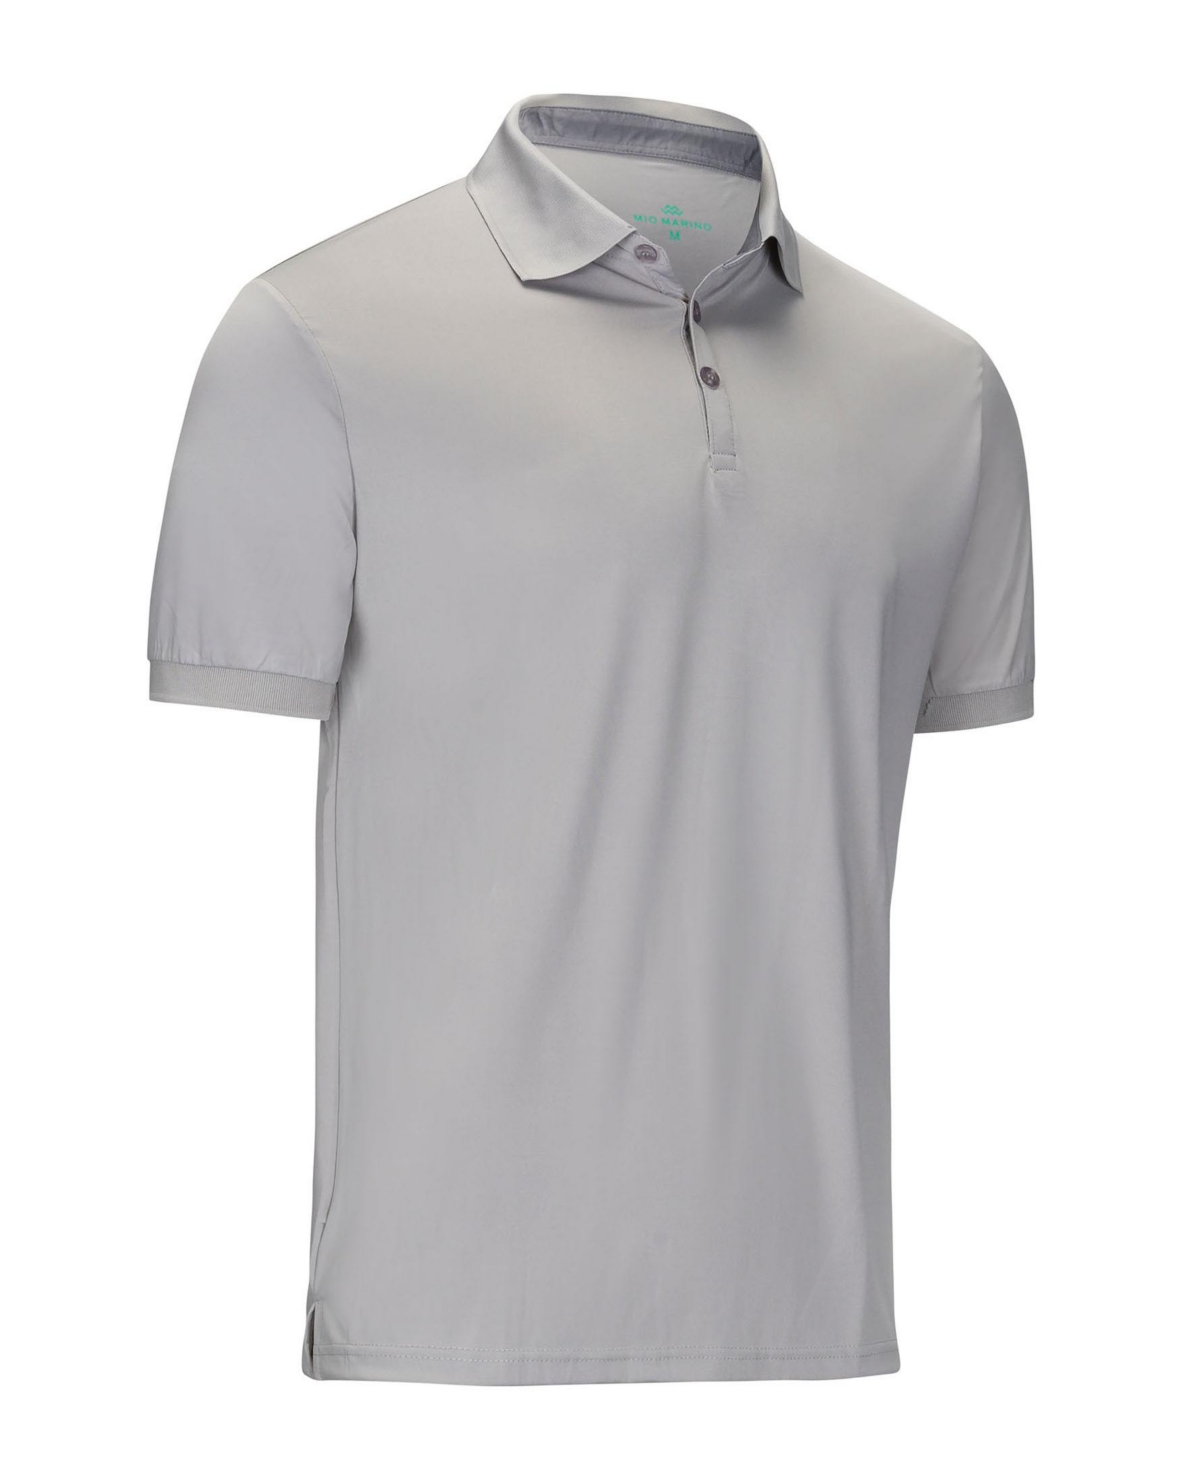 Mio Marino Men's Designer Golf Polo Shirt, Plus Size